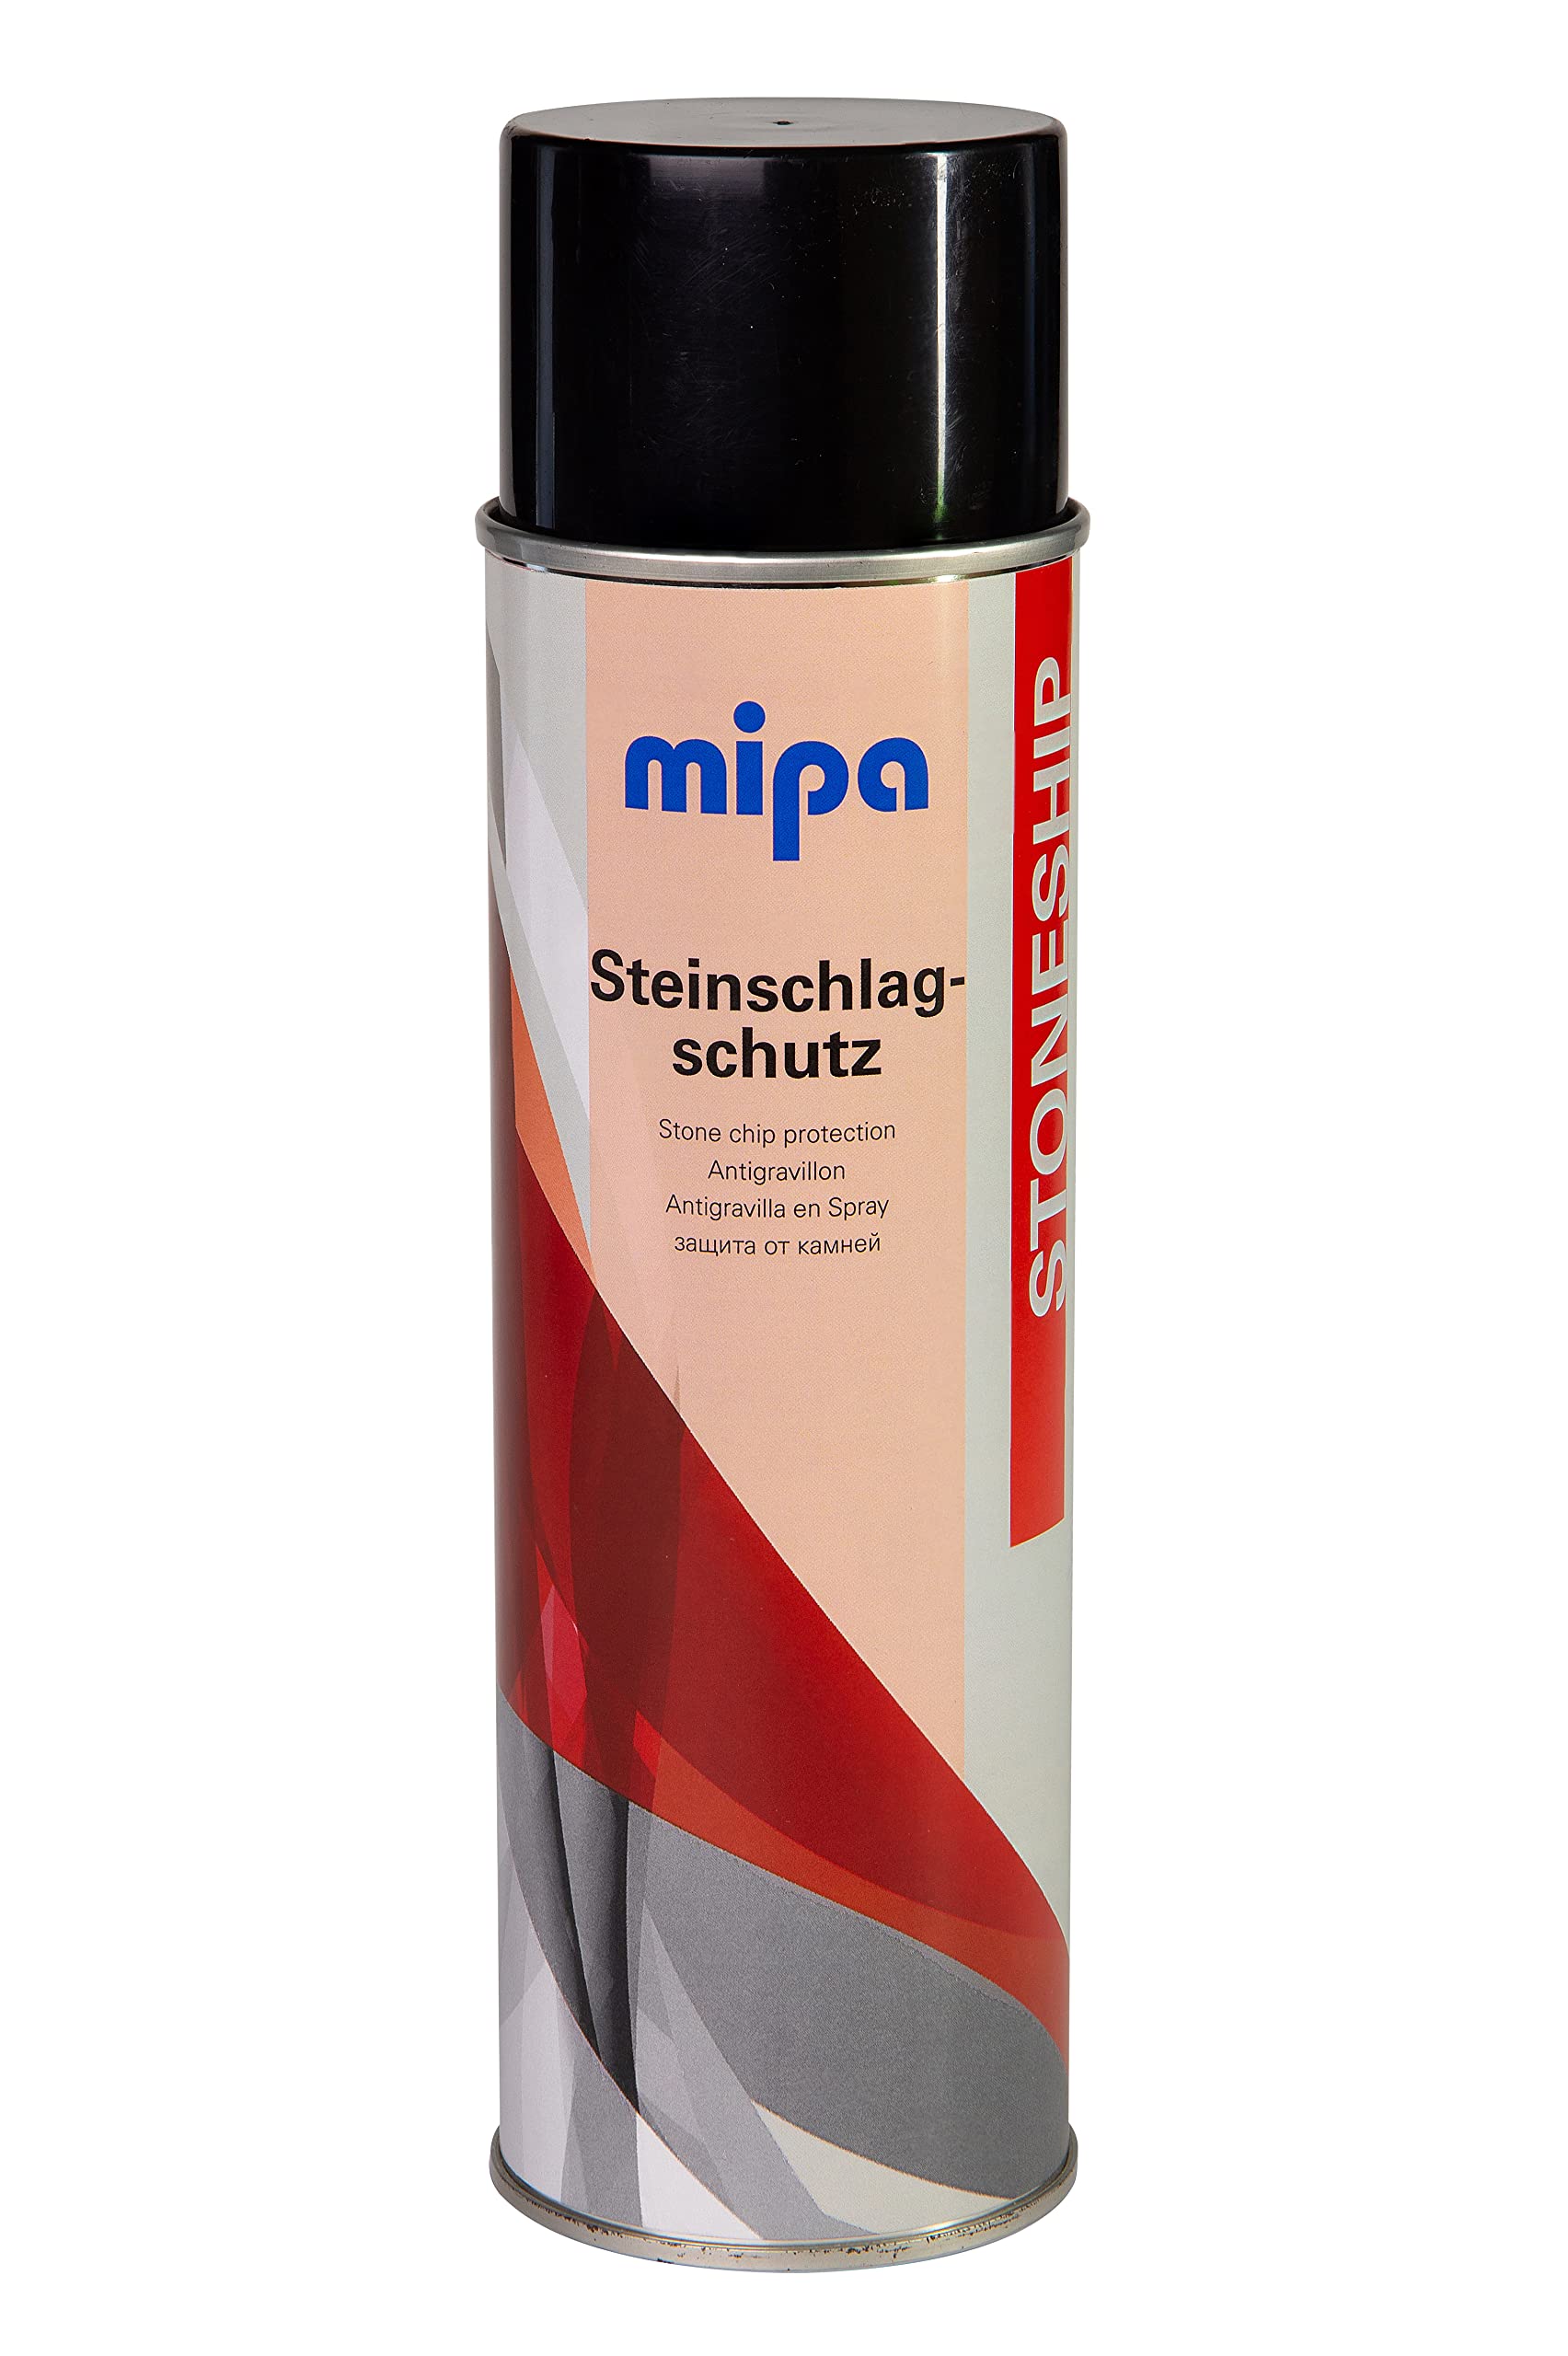 MIPA Steinschlagschutz-Spray 500g Autolack hellgrau von MIPA